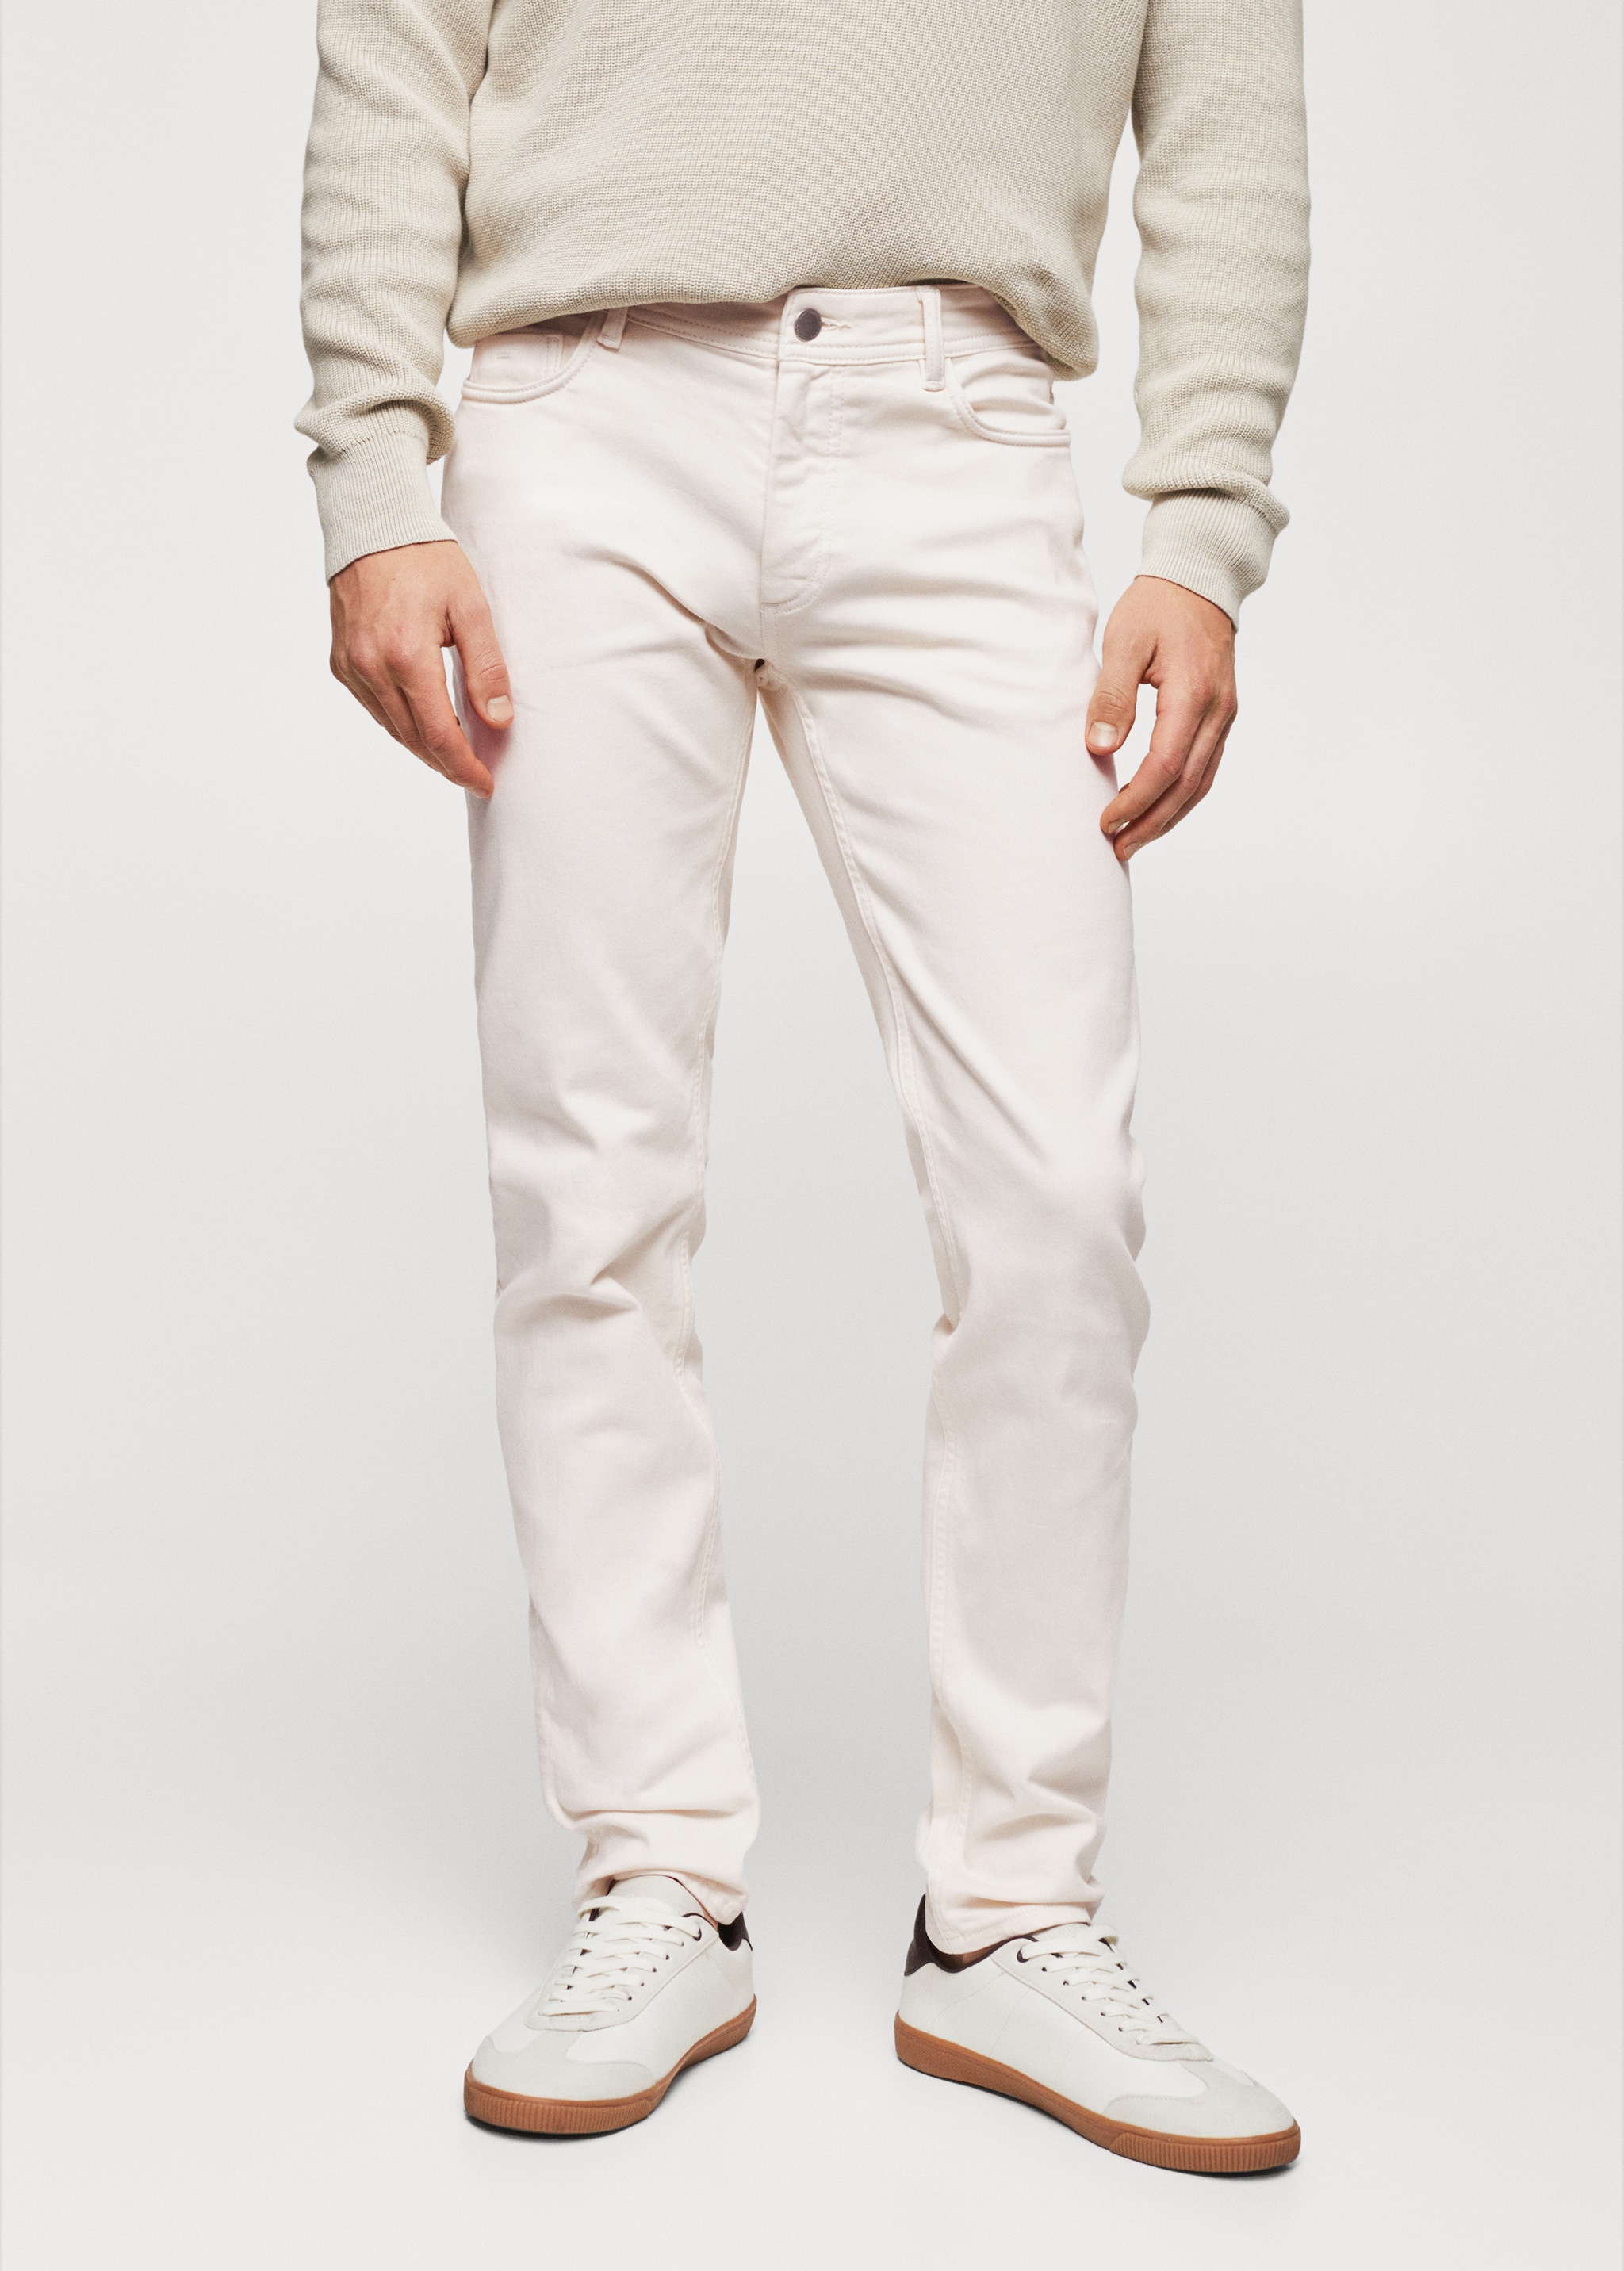 Färgade jeans slim fit - Bild av mittparti